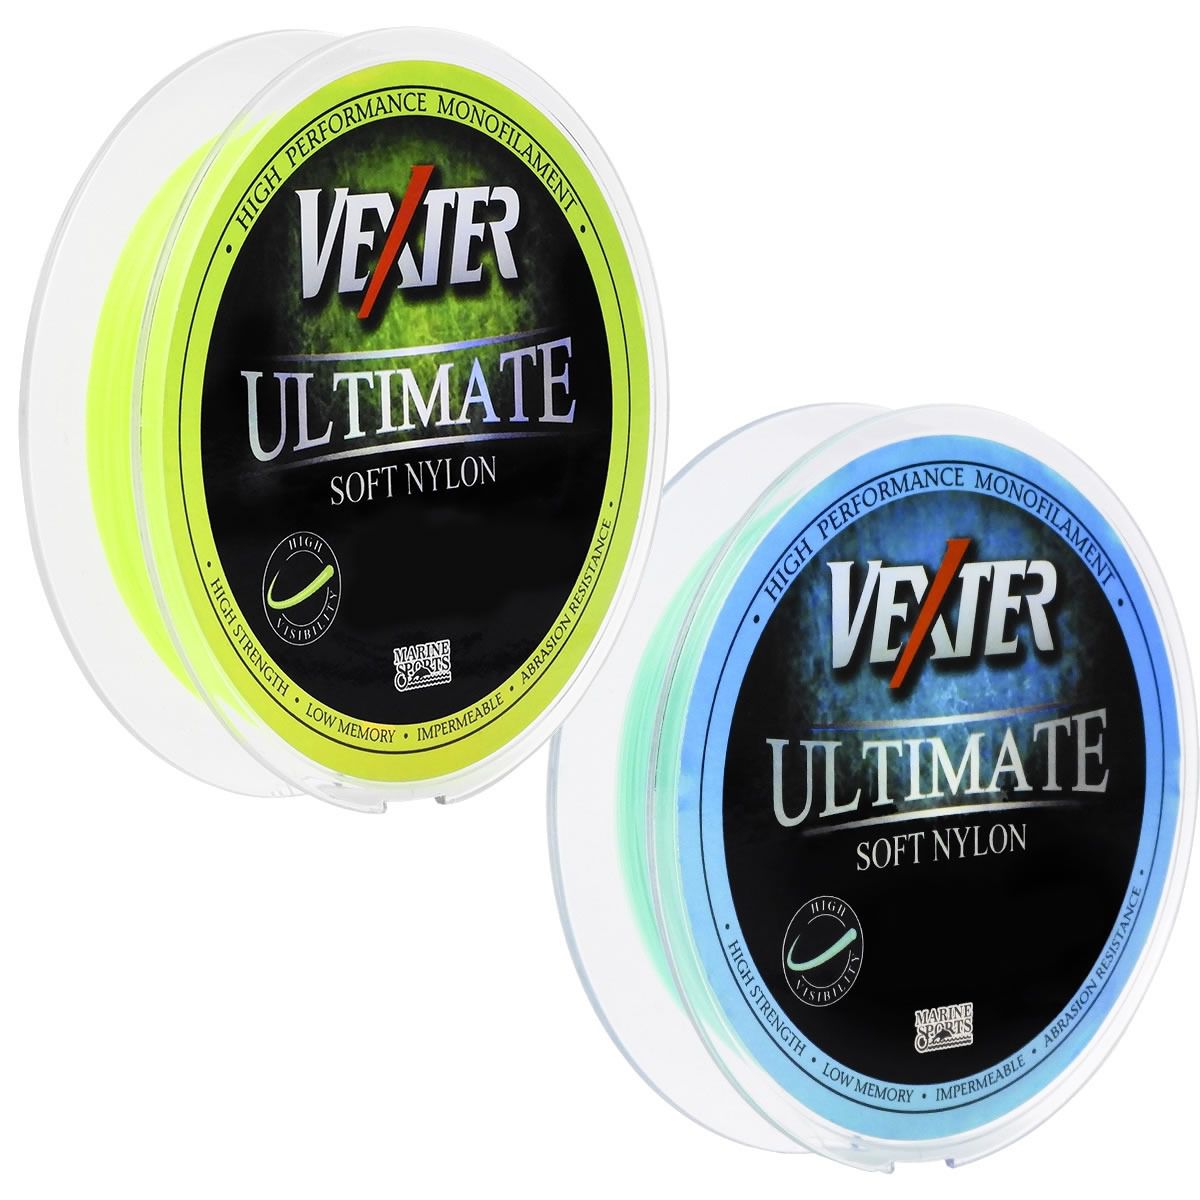 Linha Vexter Ultimate Soft Nylon Monofilamento 0,37mm 18Lbs/8,5kg - 300 Metros - Life Pesca - Sua loja de Pesca, Camping e Lazer